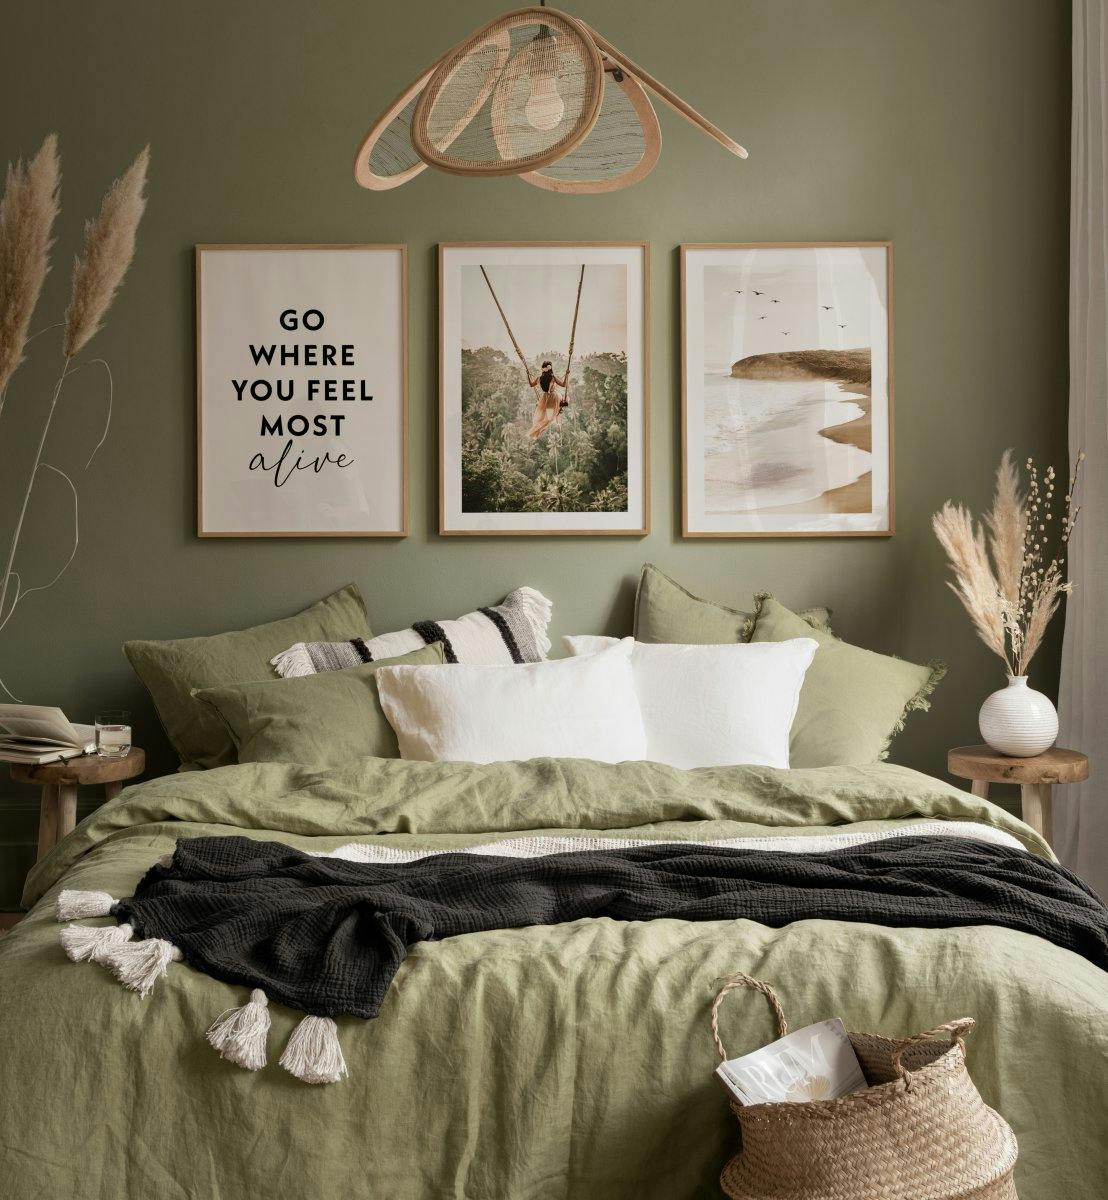 Fotografie przyrodniczne i cytaty w stonowanych kolorach do sypialni